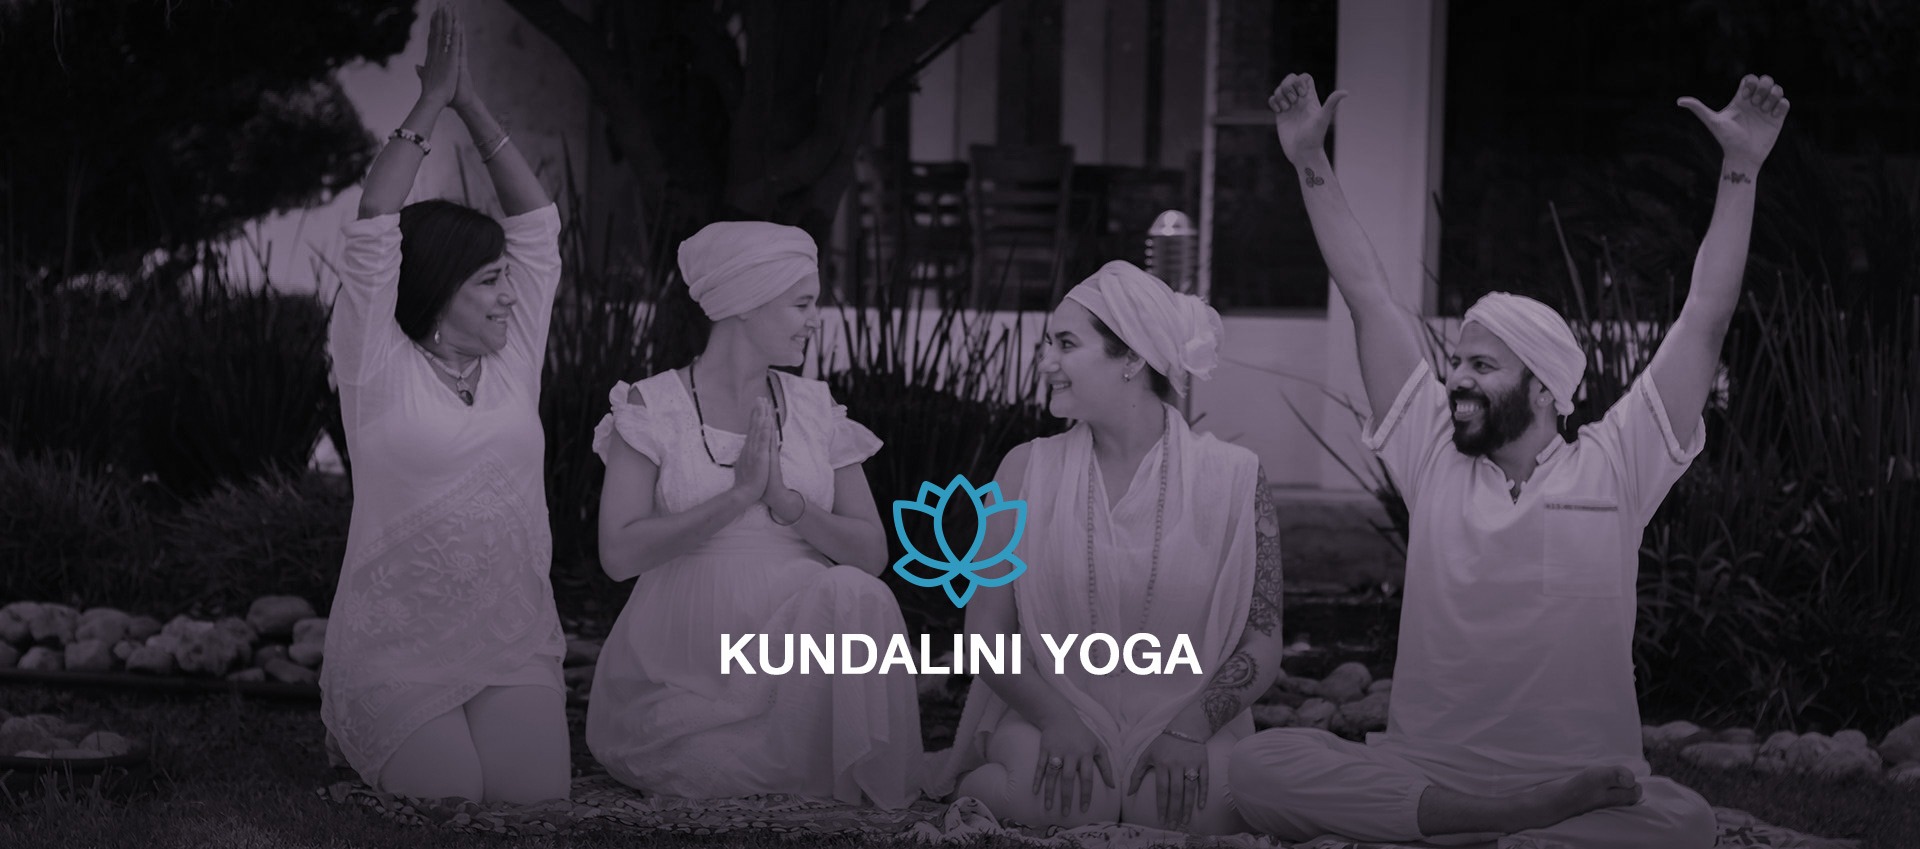 ¿Qué es Kundalini yoga?